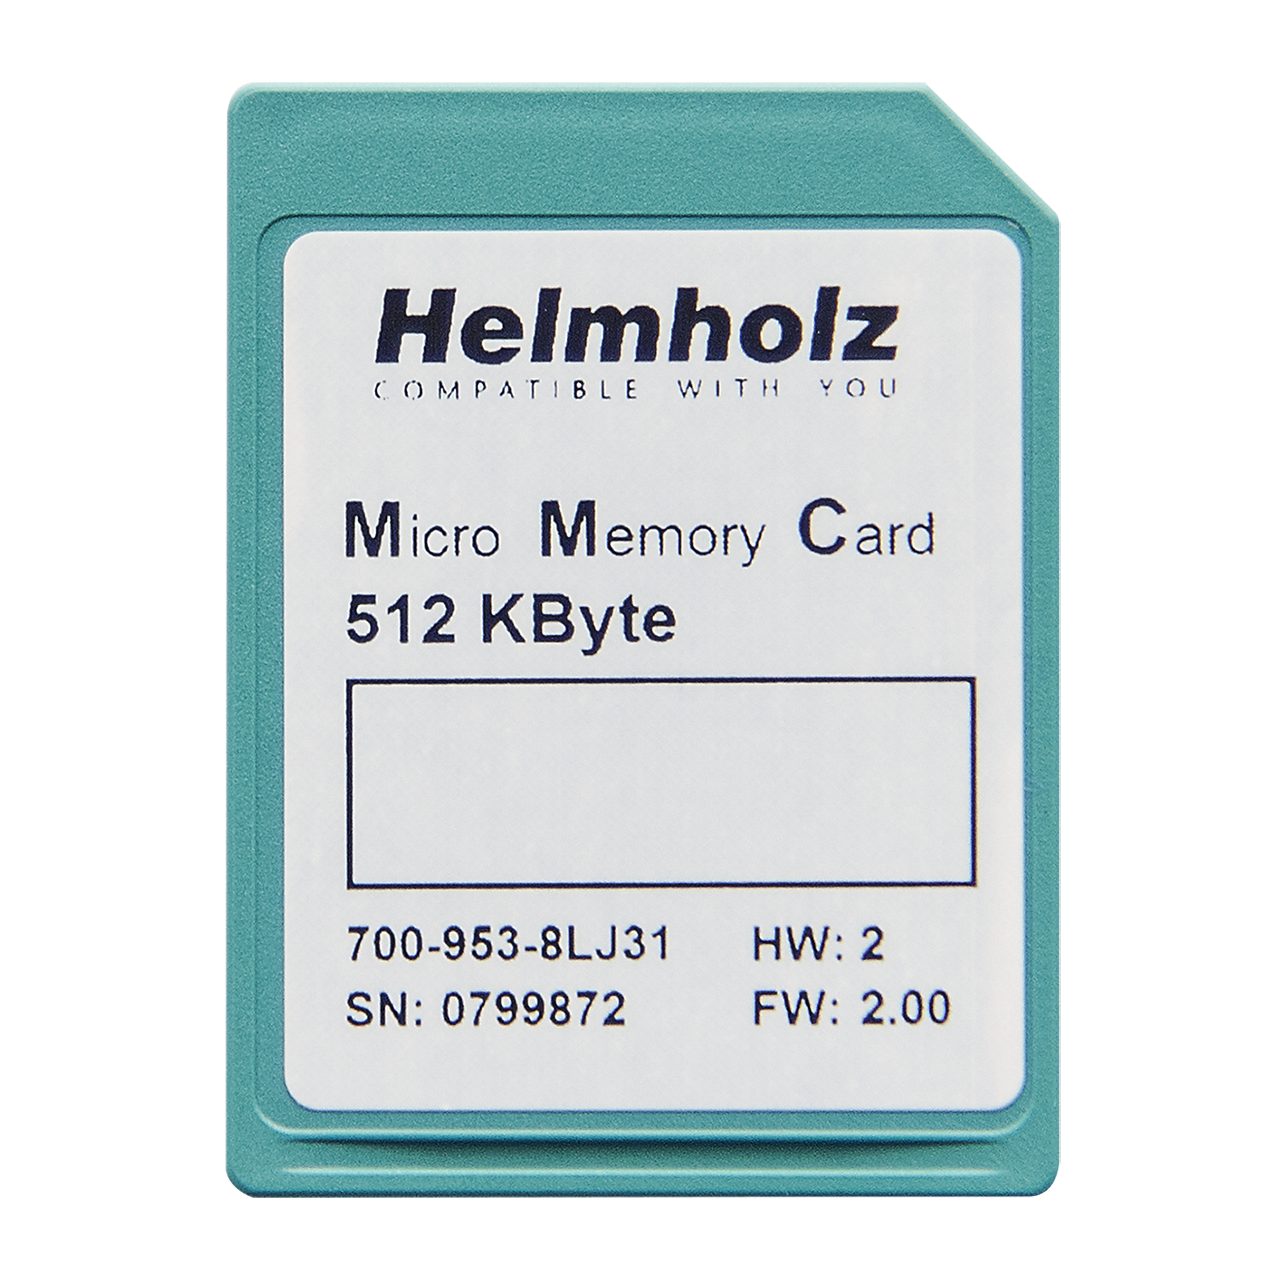 Helmholz Micro Tarjeta de Memoria, 512 kByte 700-953-8LJ31